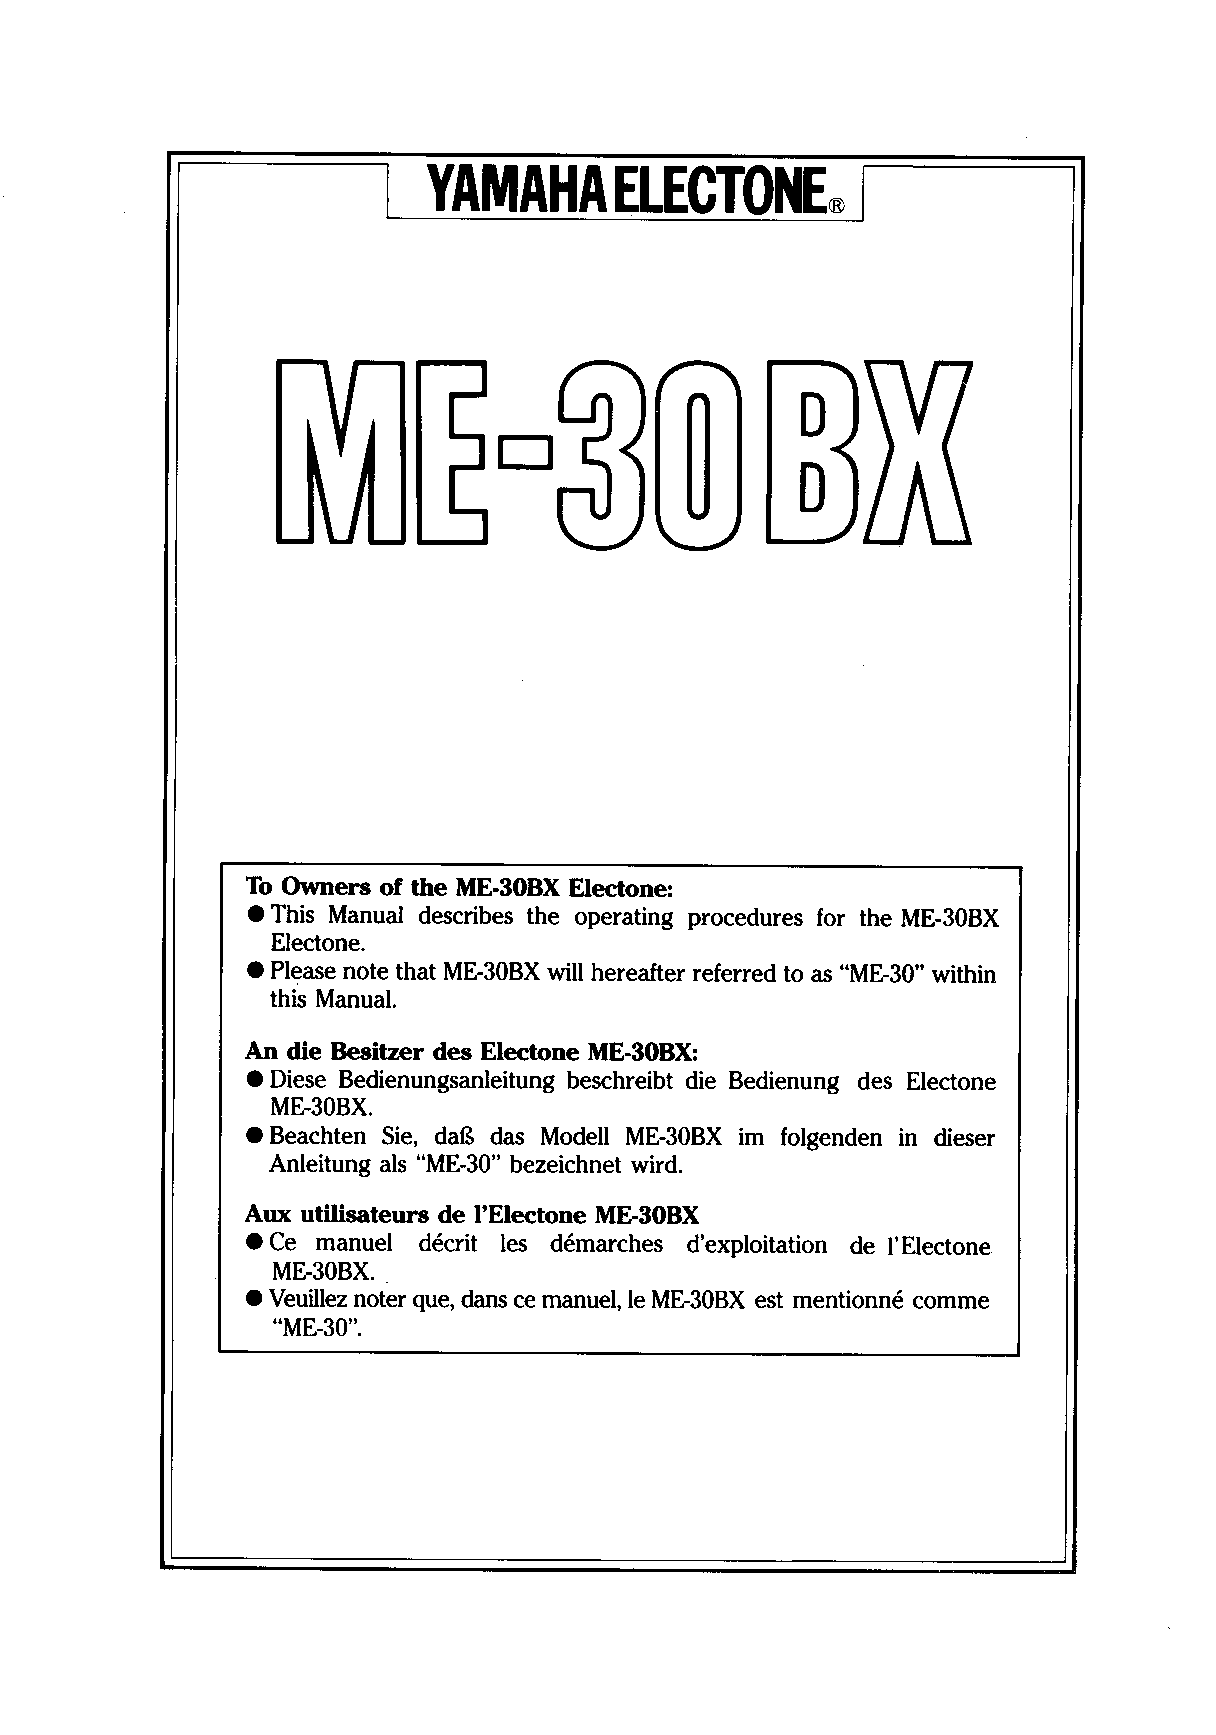 Yamaha ME30BXE, ME30BX User Manual